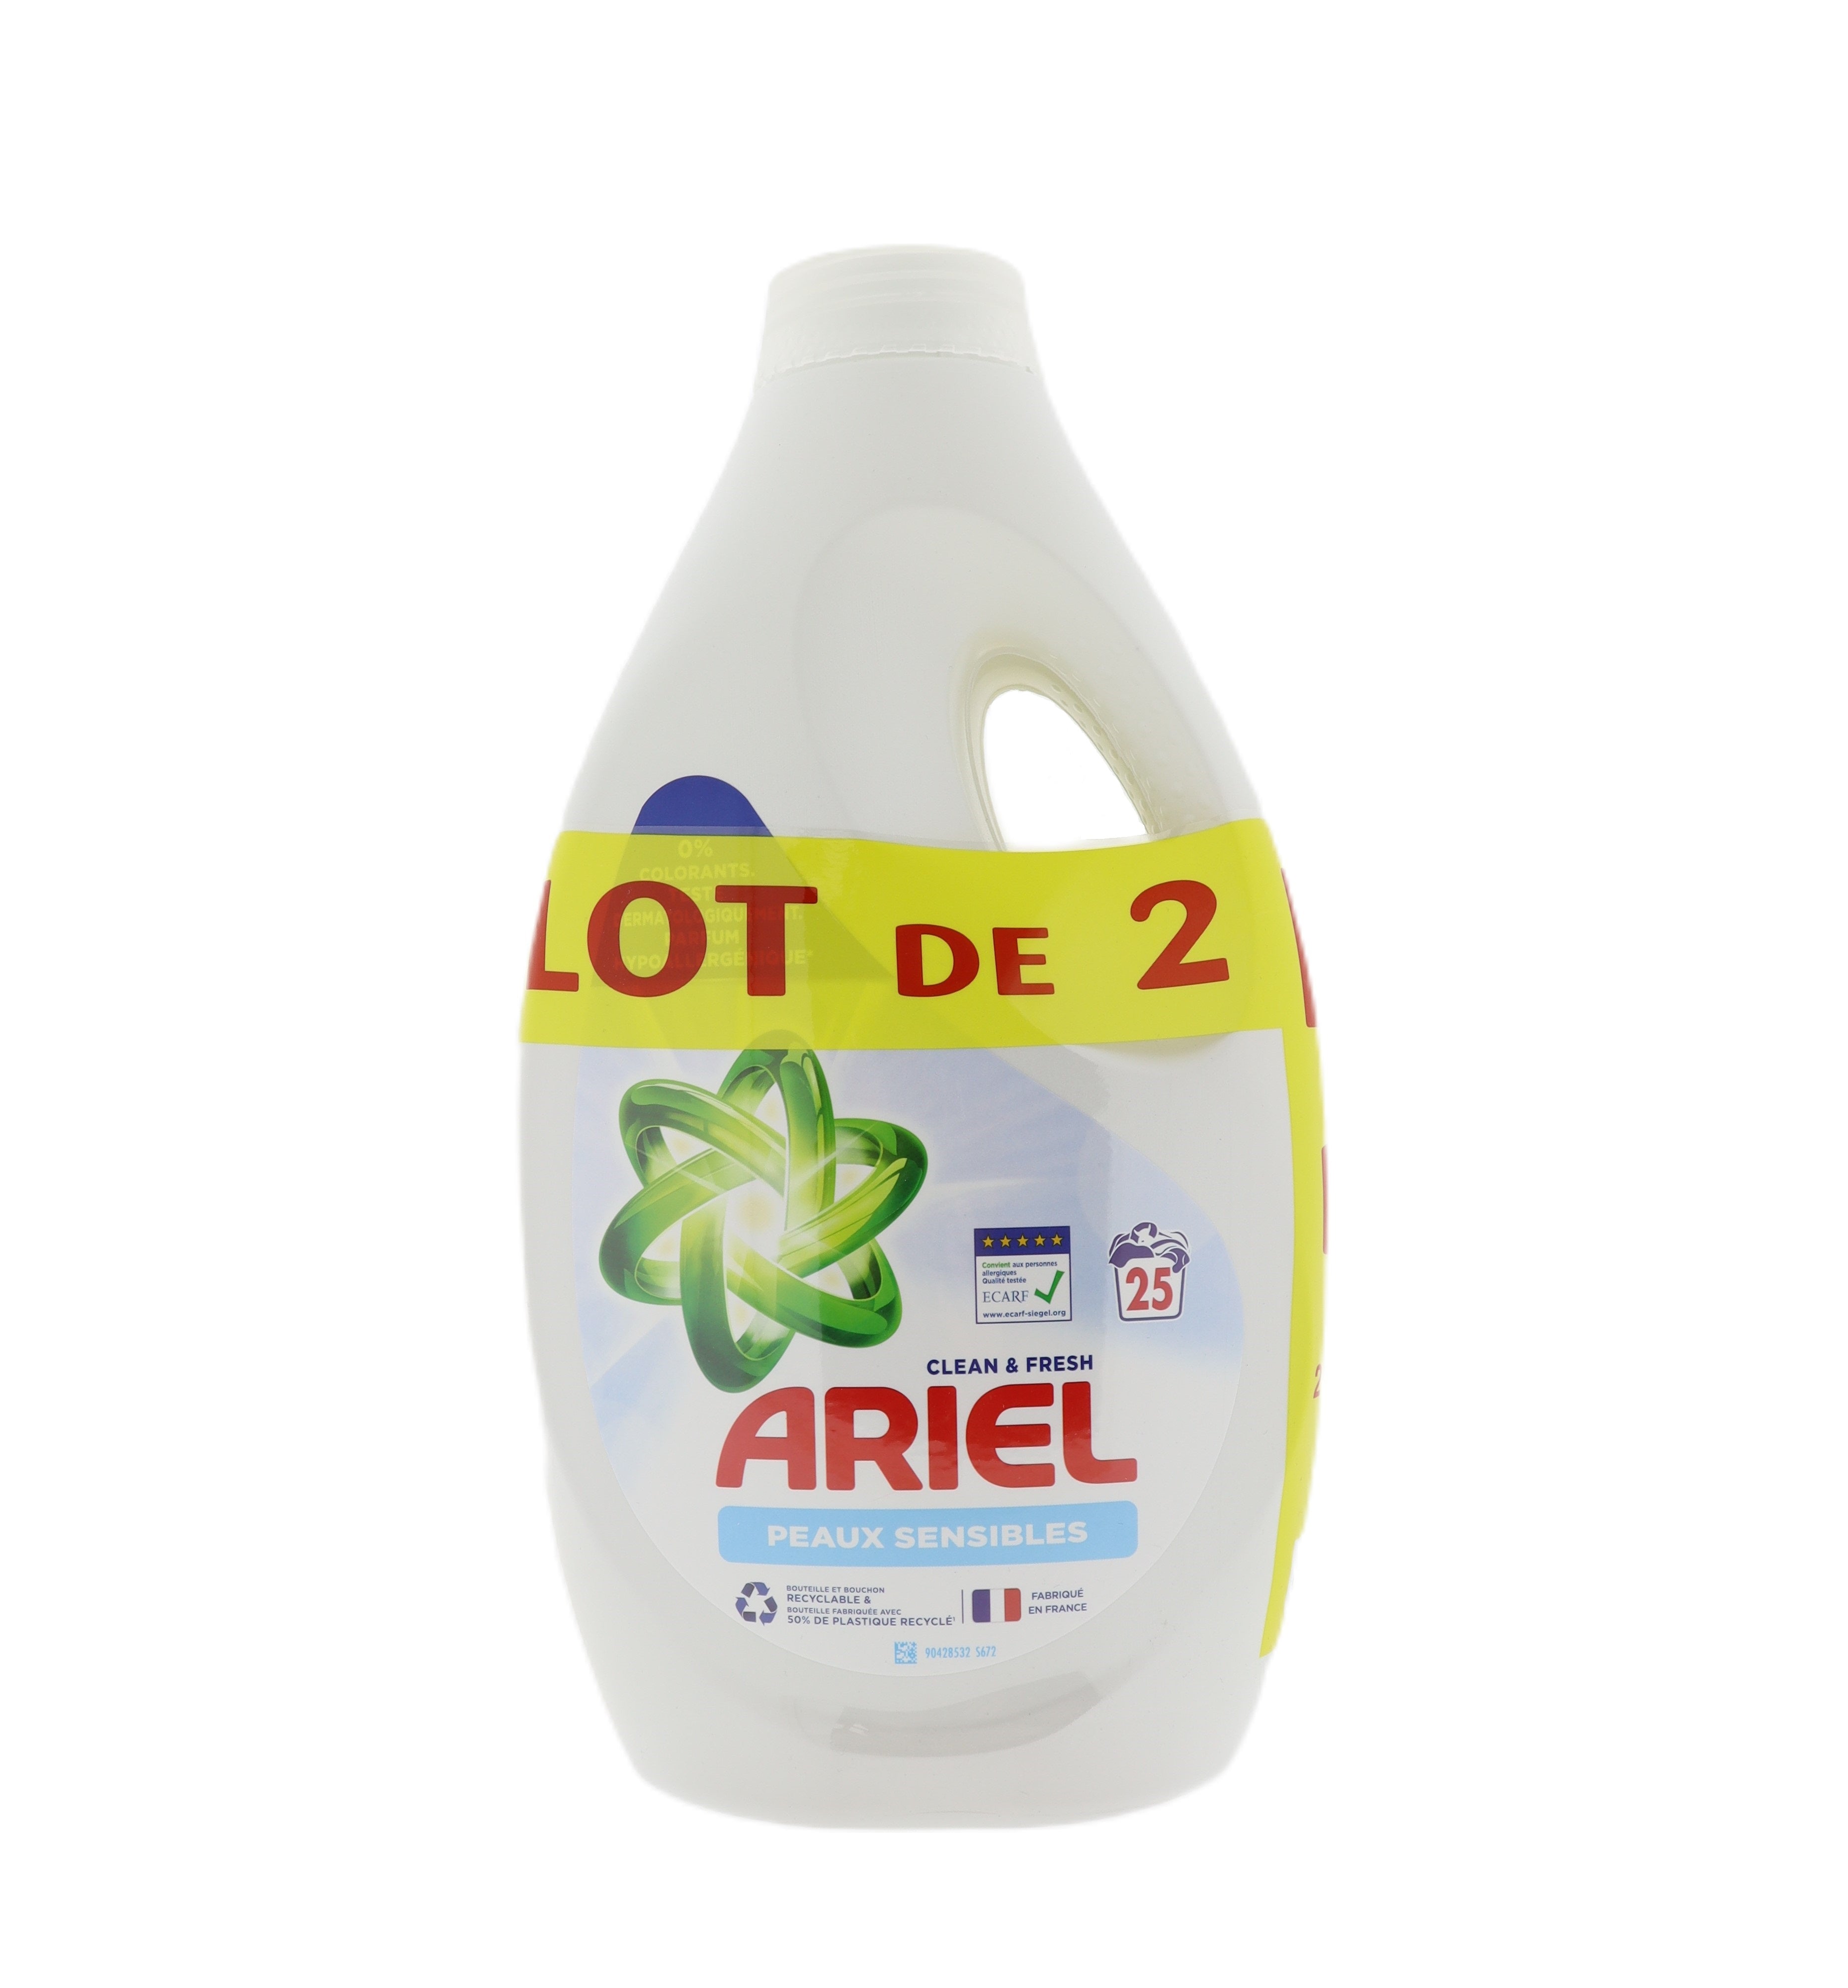 Ariel Sensitive vloeibaar wasmiddel 1,25L 2pack 50 wasbeurten